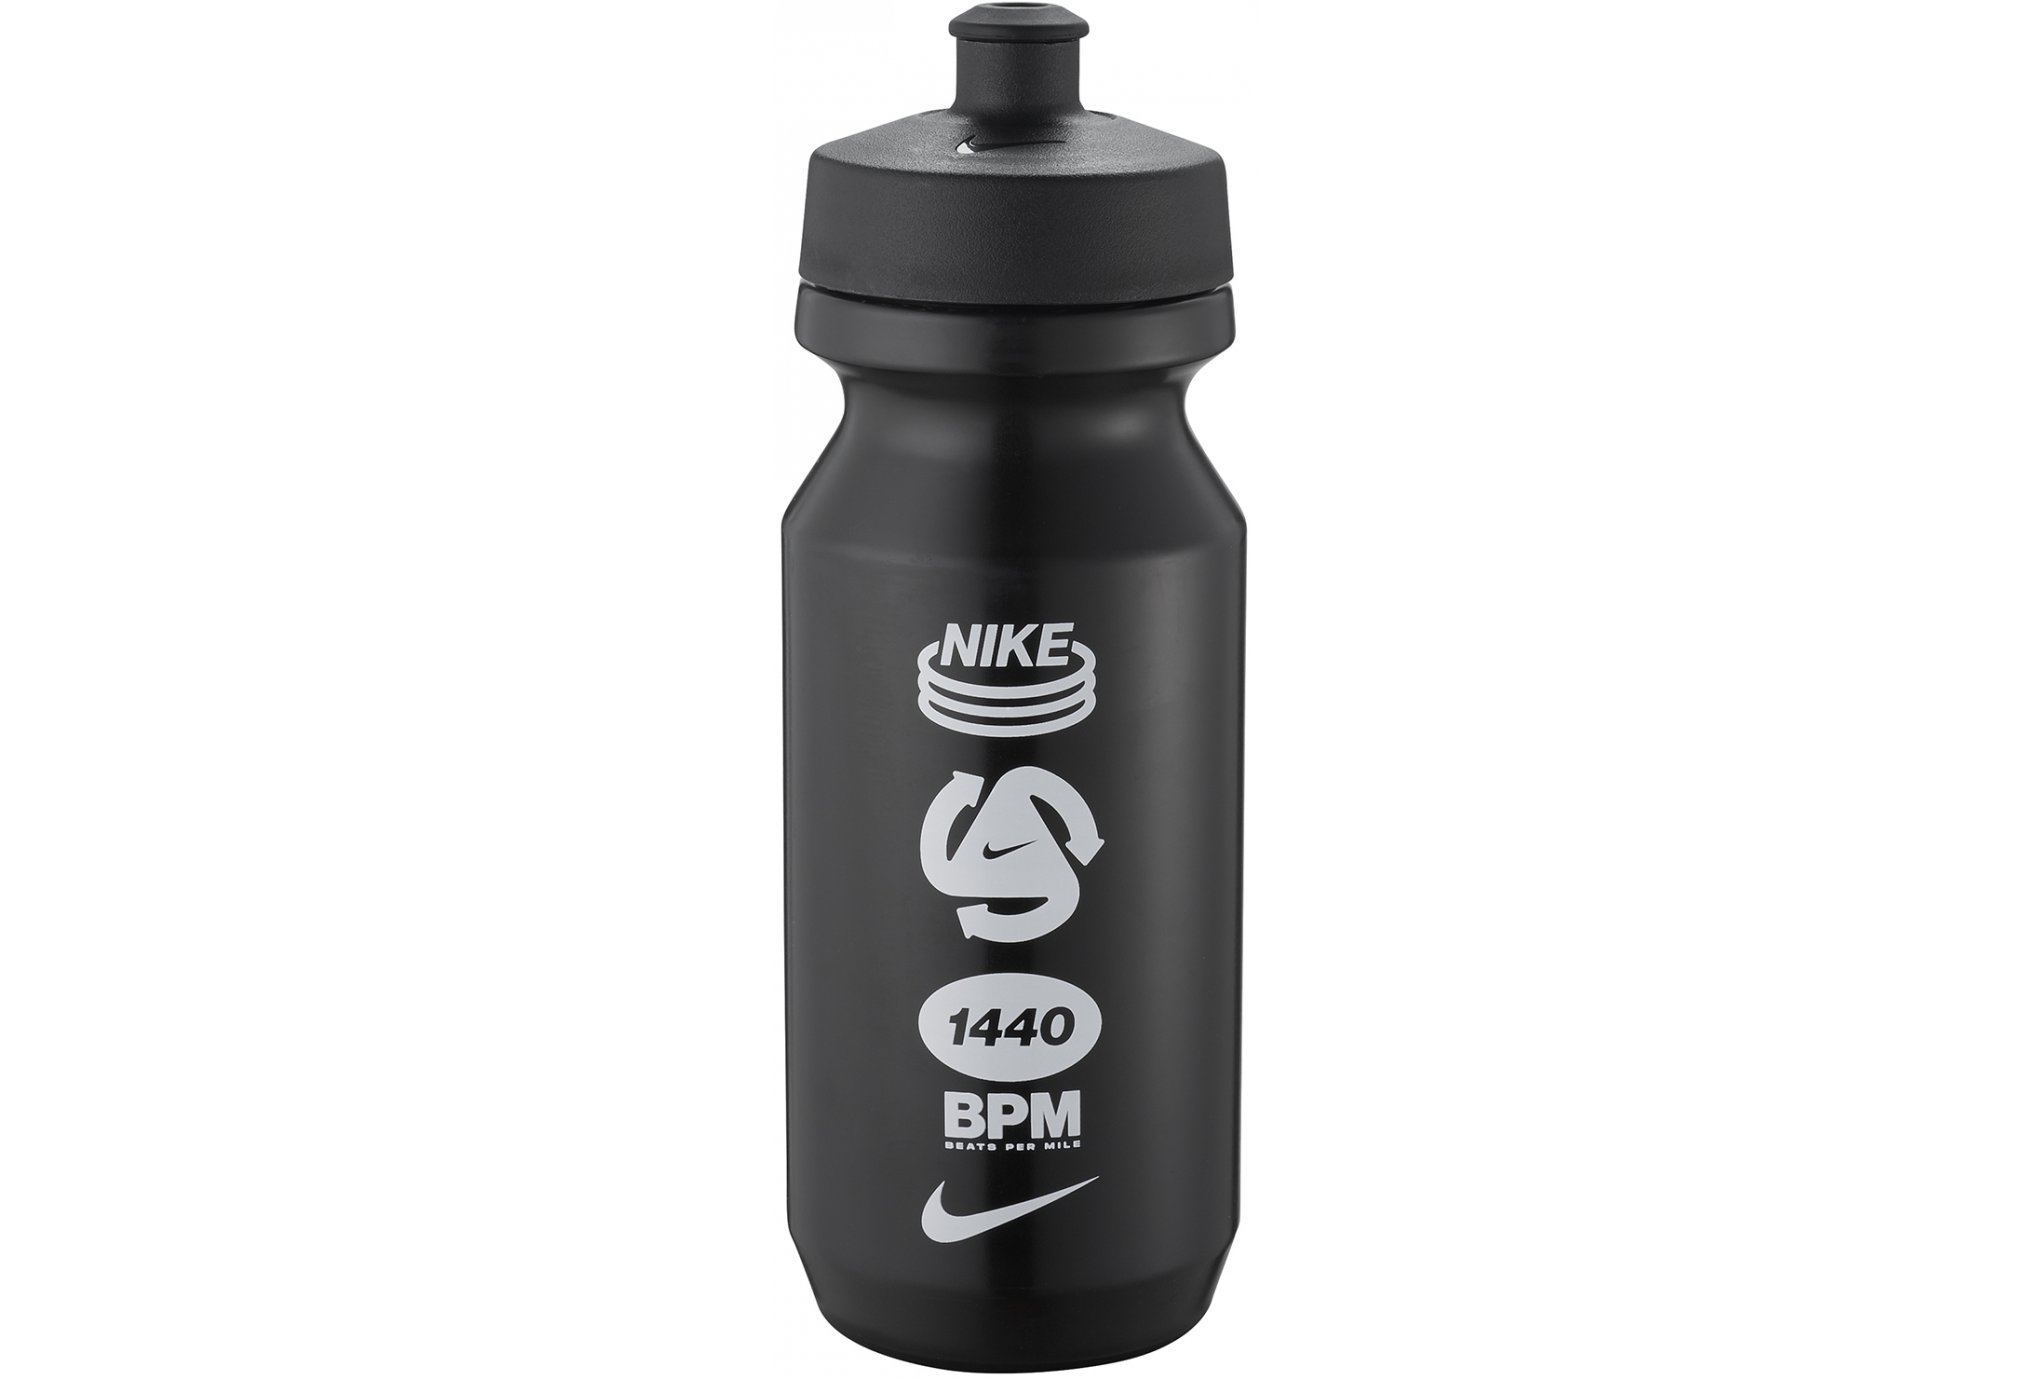 Nike Big Mouth 2.0 650mL Sac hydratation / Gourde